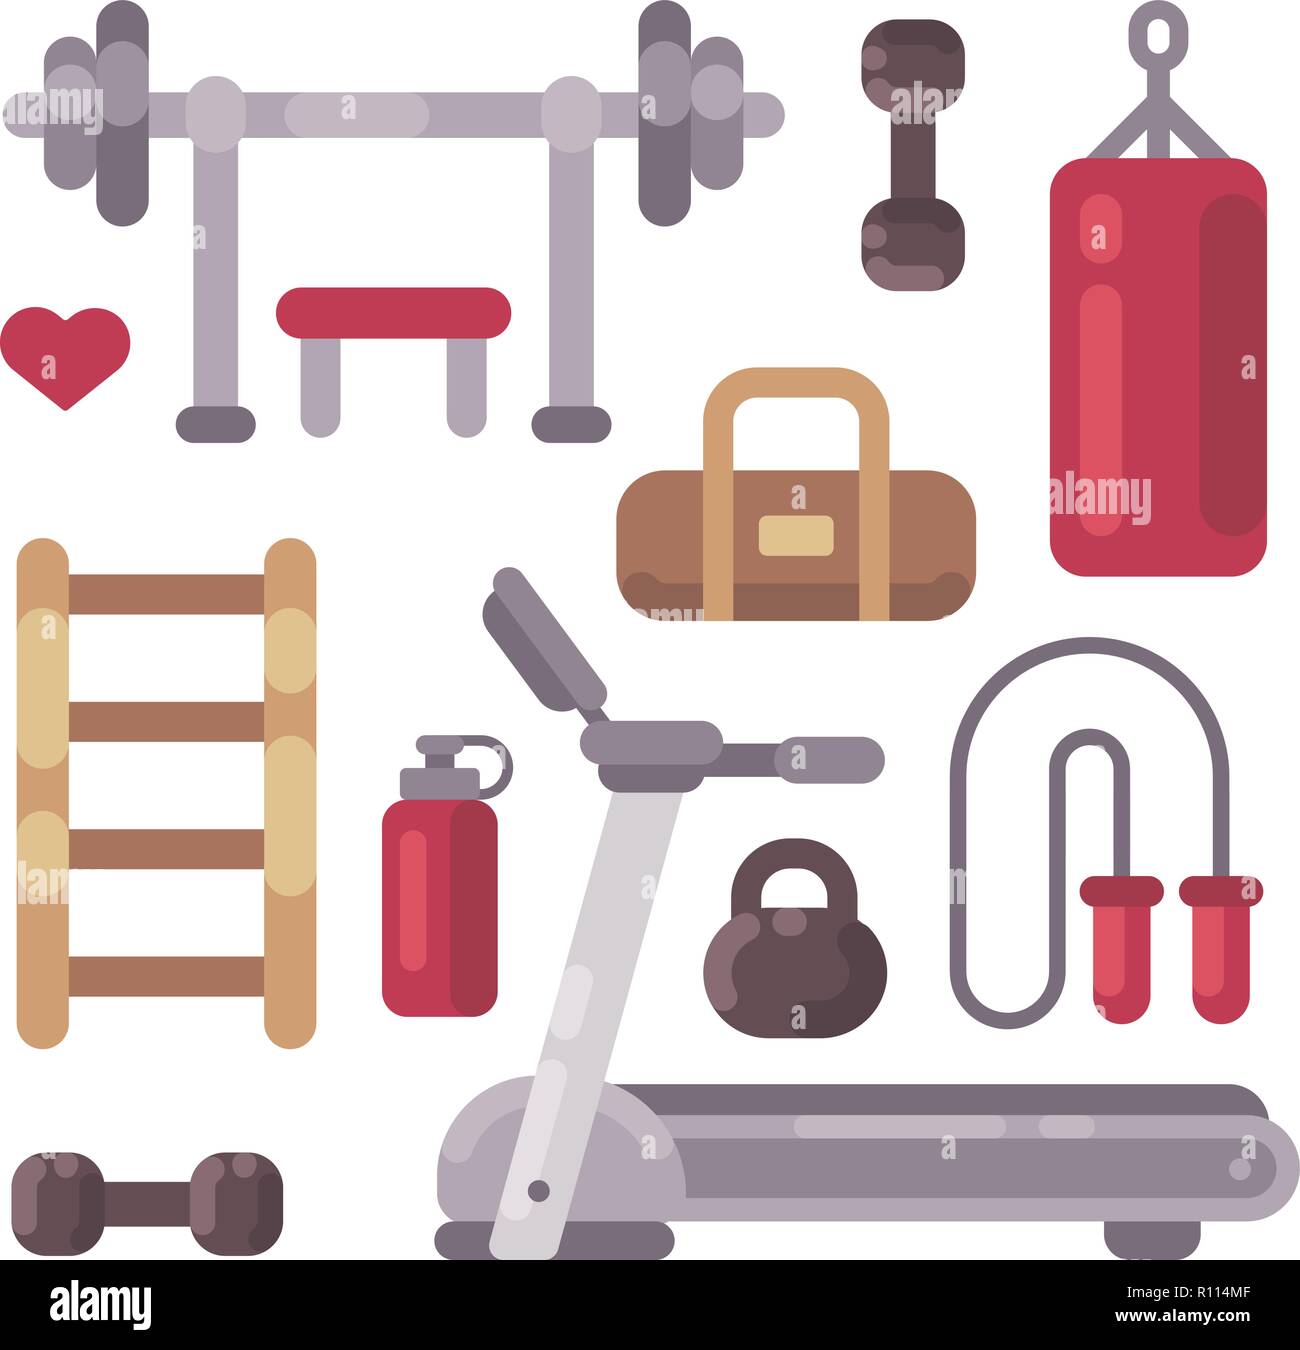 Satz von Fitnessgeräten Symbole. Sport und Fitness Objekte flach Abbildung Stock Vektor